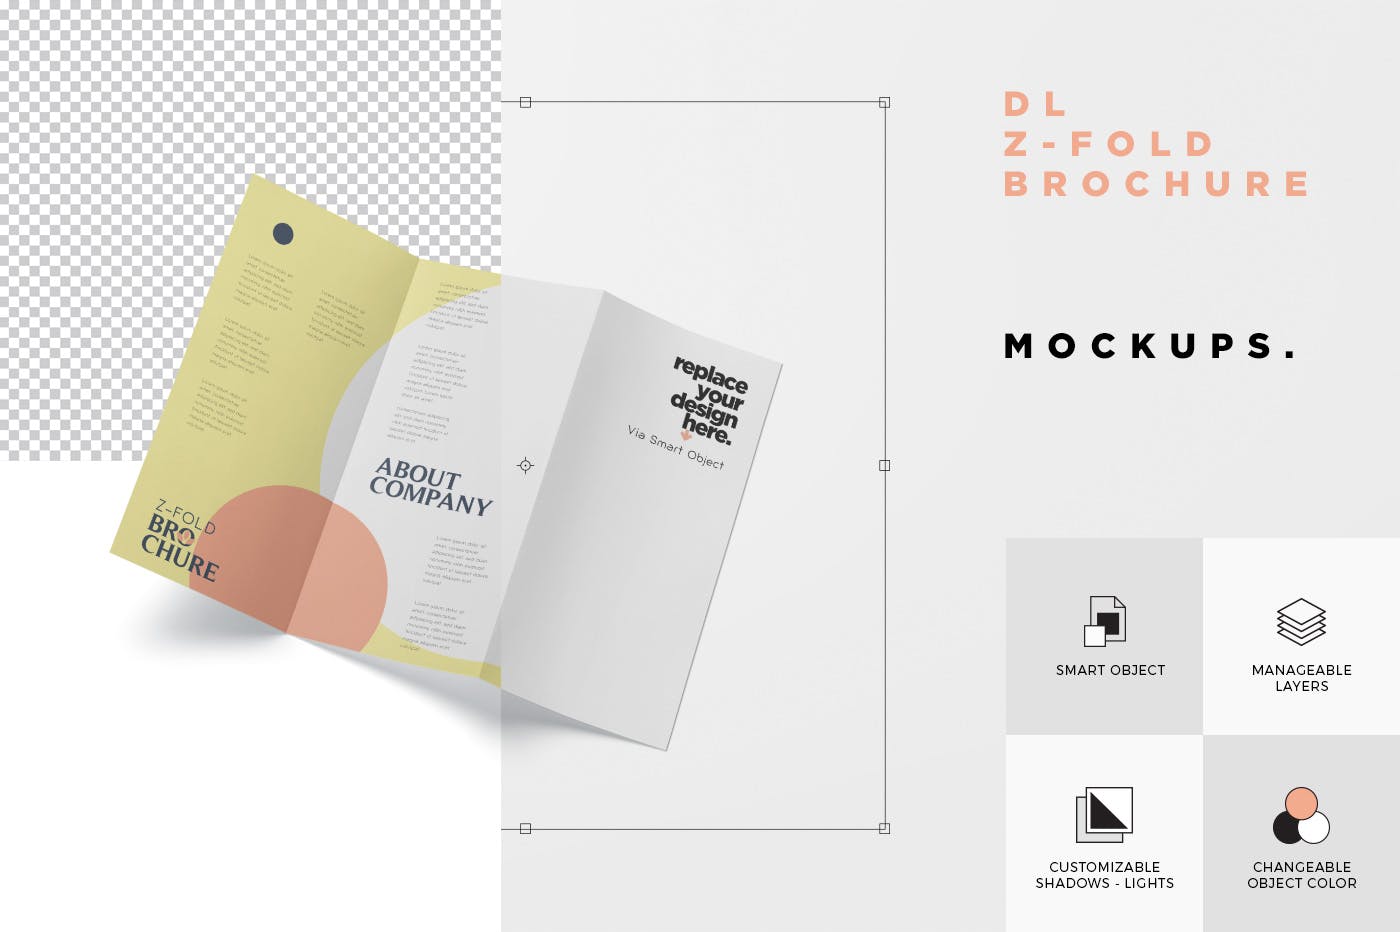 三折页设计风格企业传单/宣传单设计图样机蚂蚁素材精选 DL Z-Fold Brochure Mockup – 99 x 210 mm Size插图(7)